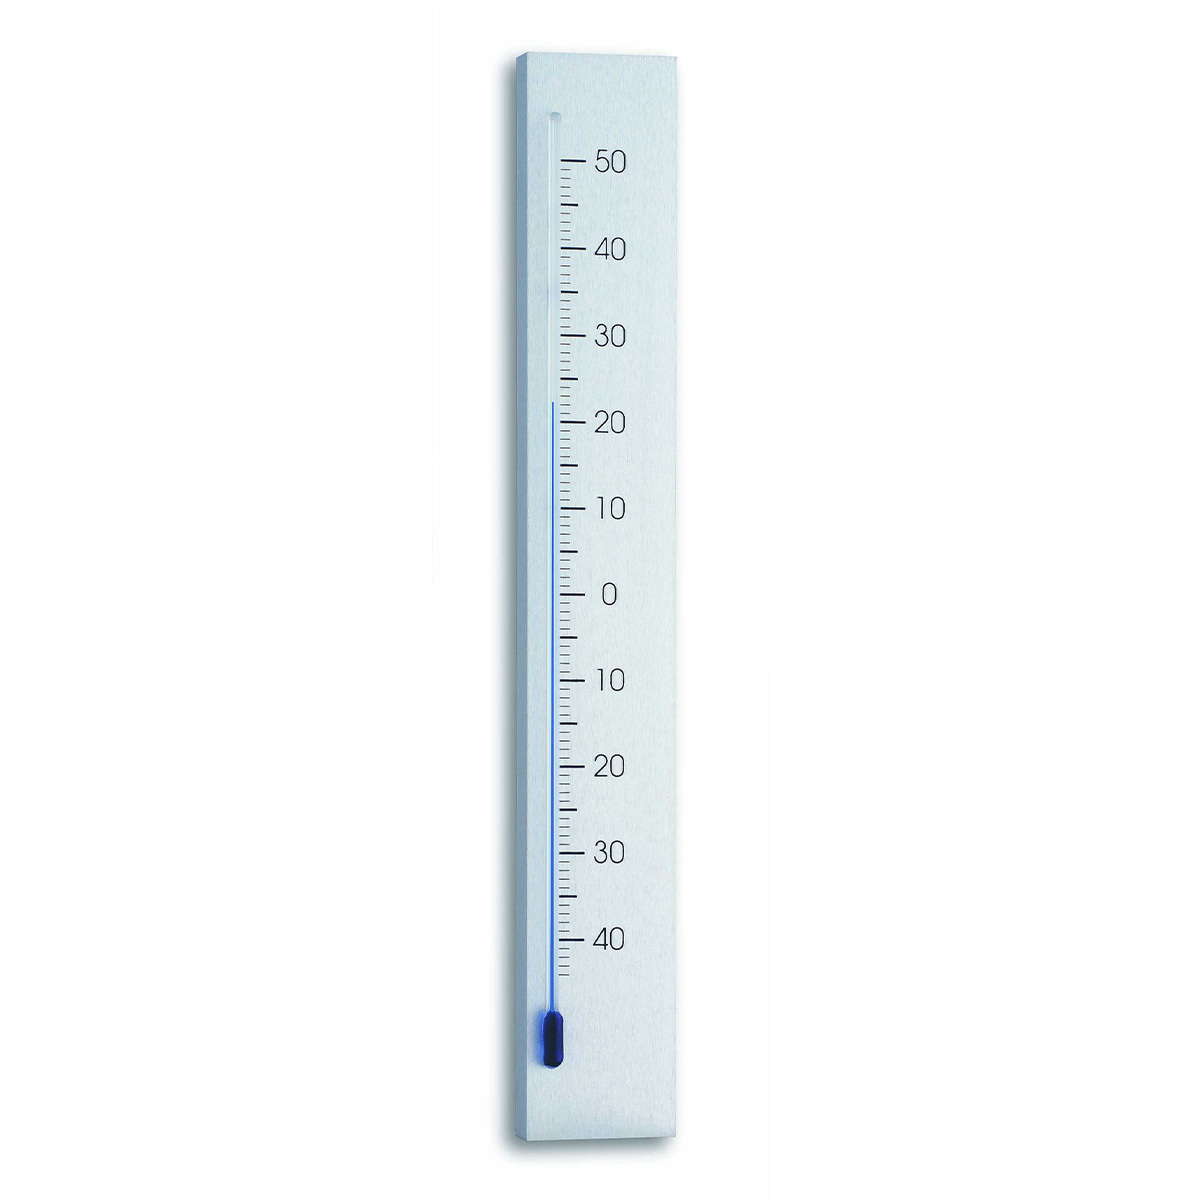 12-2033-innen-aussen-thermometer-aluminium-linea-1200x1200px.jpg